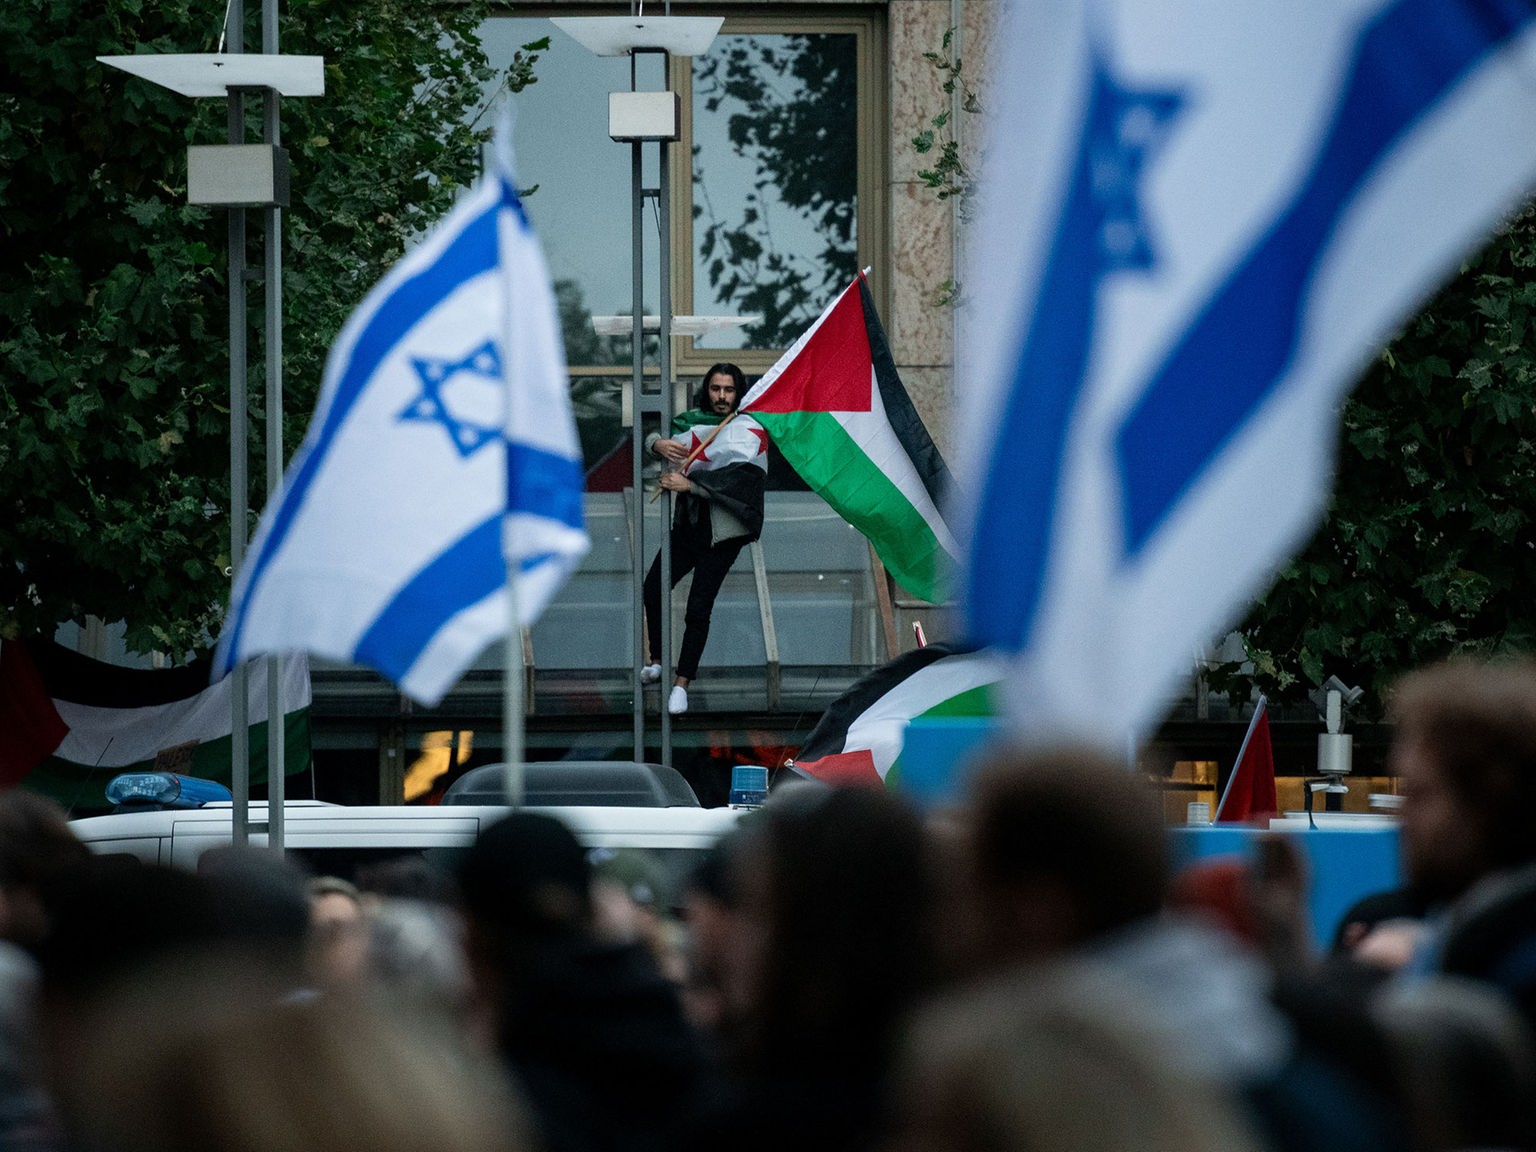 Palästina-flagge gegen stadt verschwommen hintergrund bei